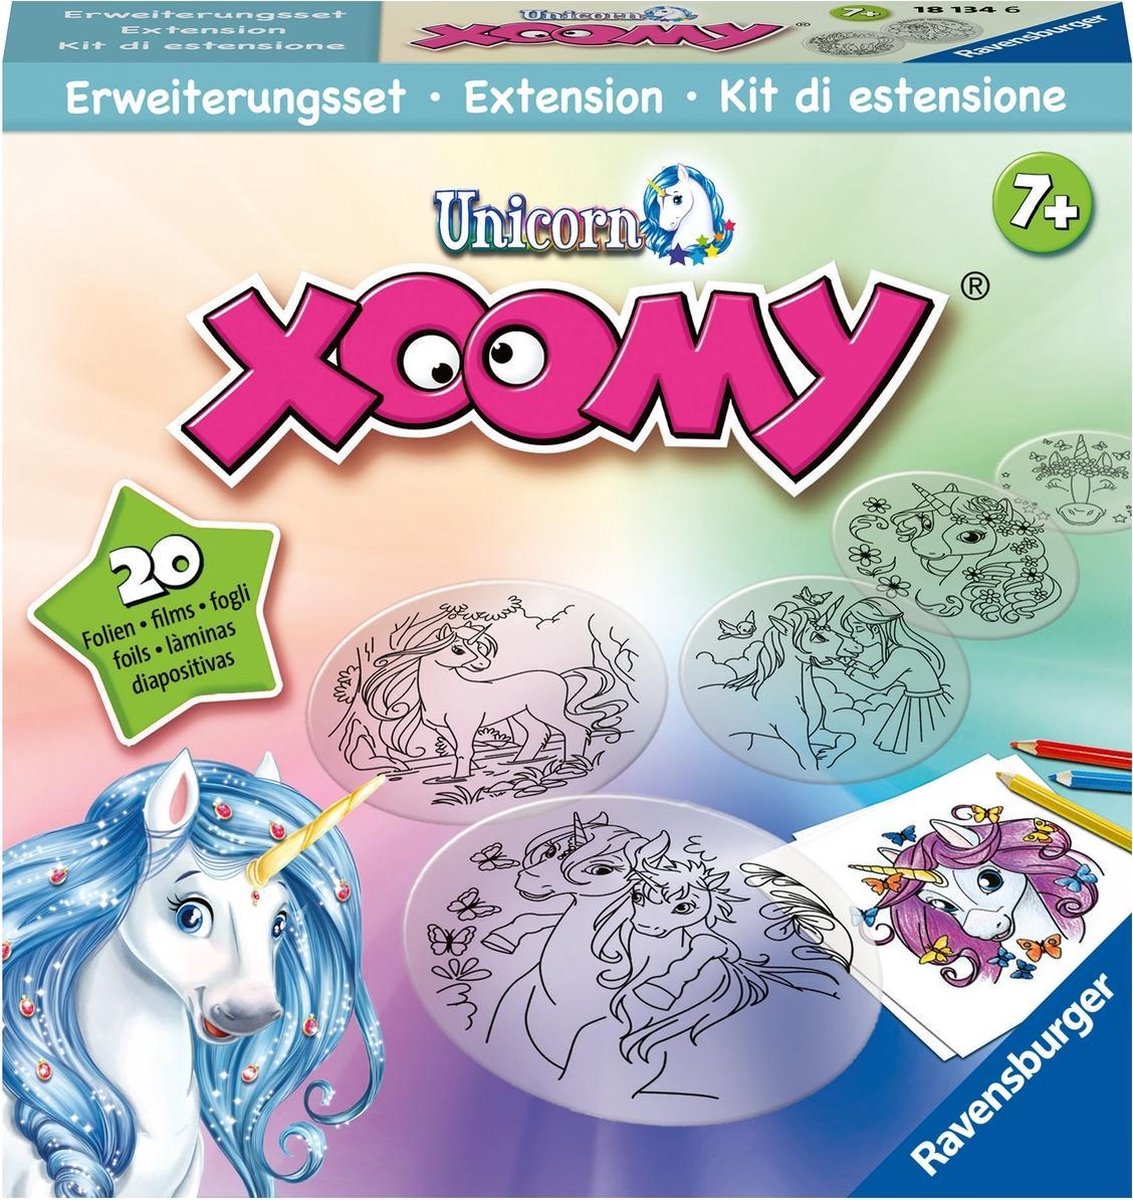   Xoomy® uitbreidingsset Unicorn